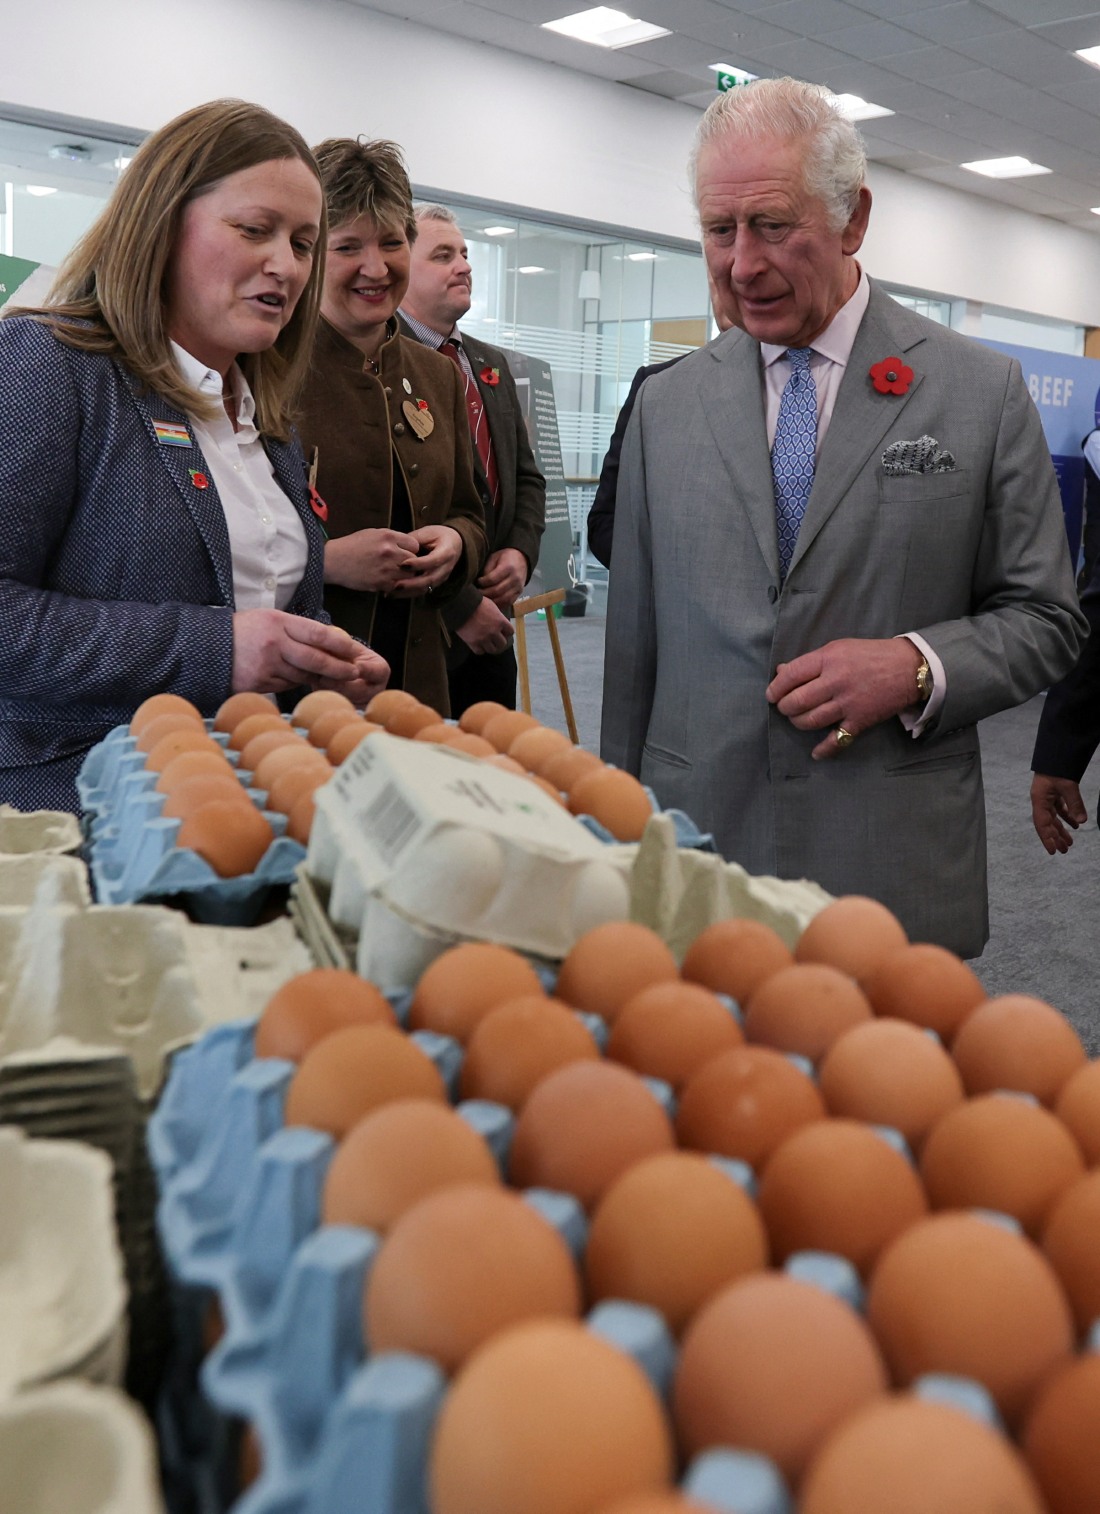 kaltak | York'ta düzenlenen bir etkinlikte Kral Charles ve Kraliçe Camilla'ya yumurta atıldı.